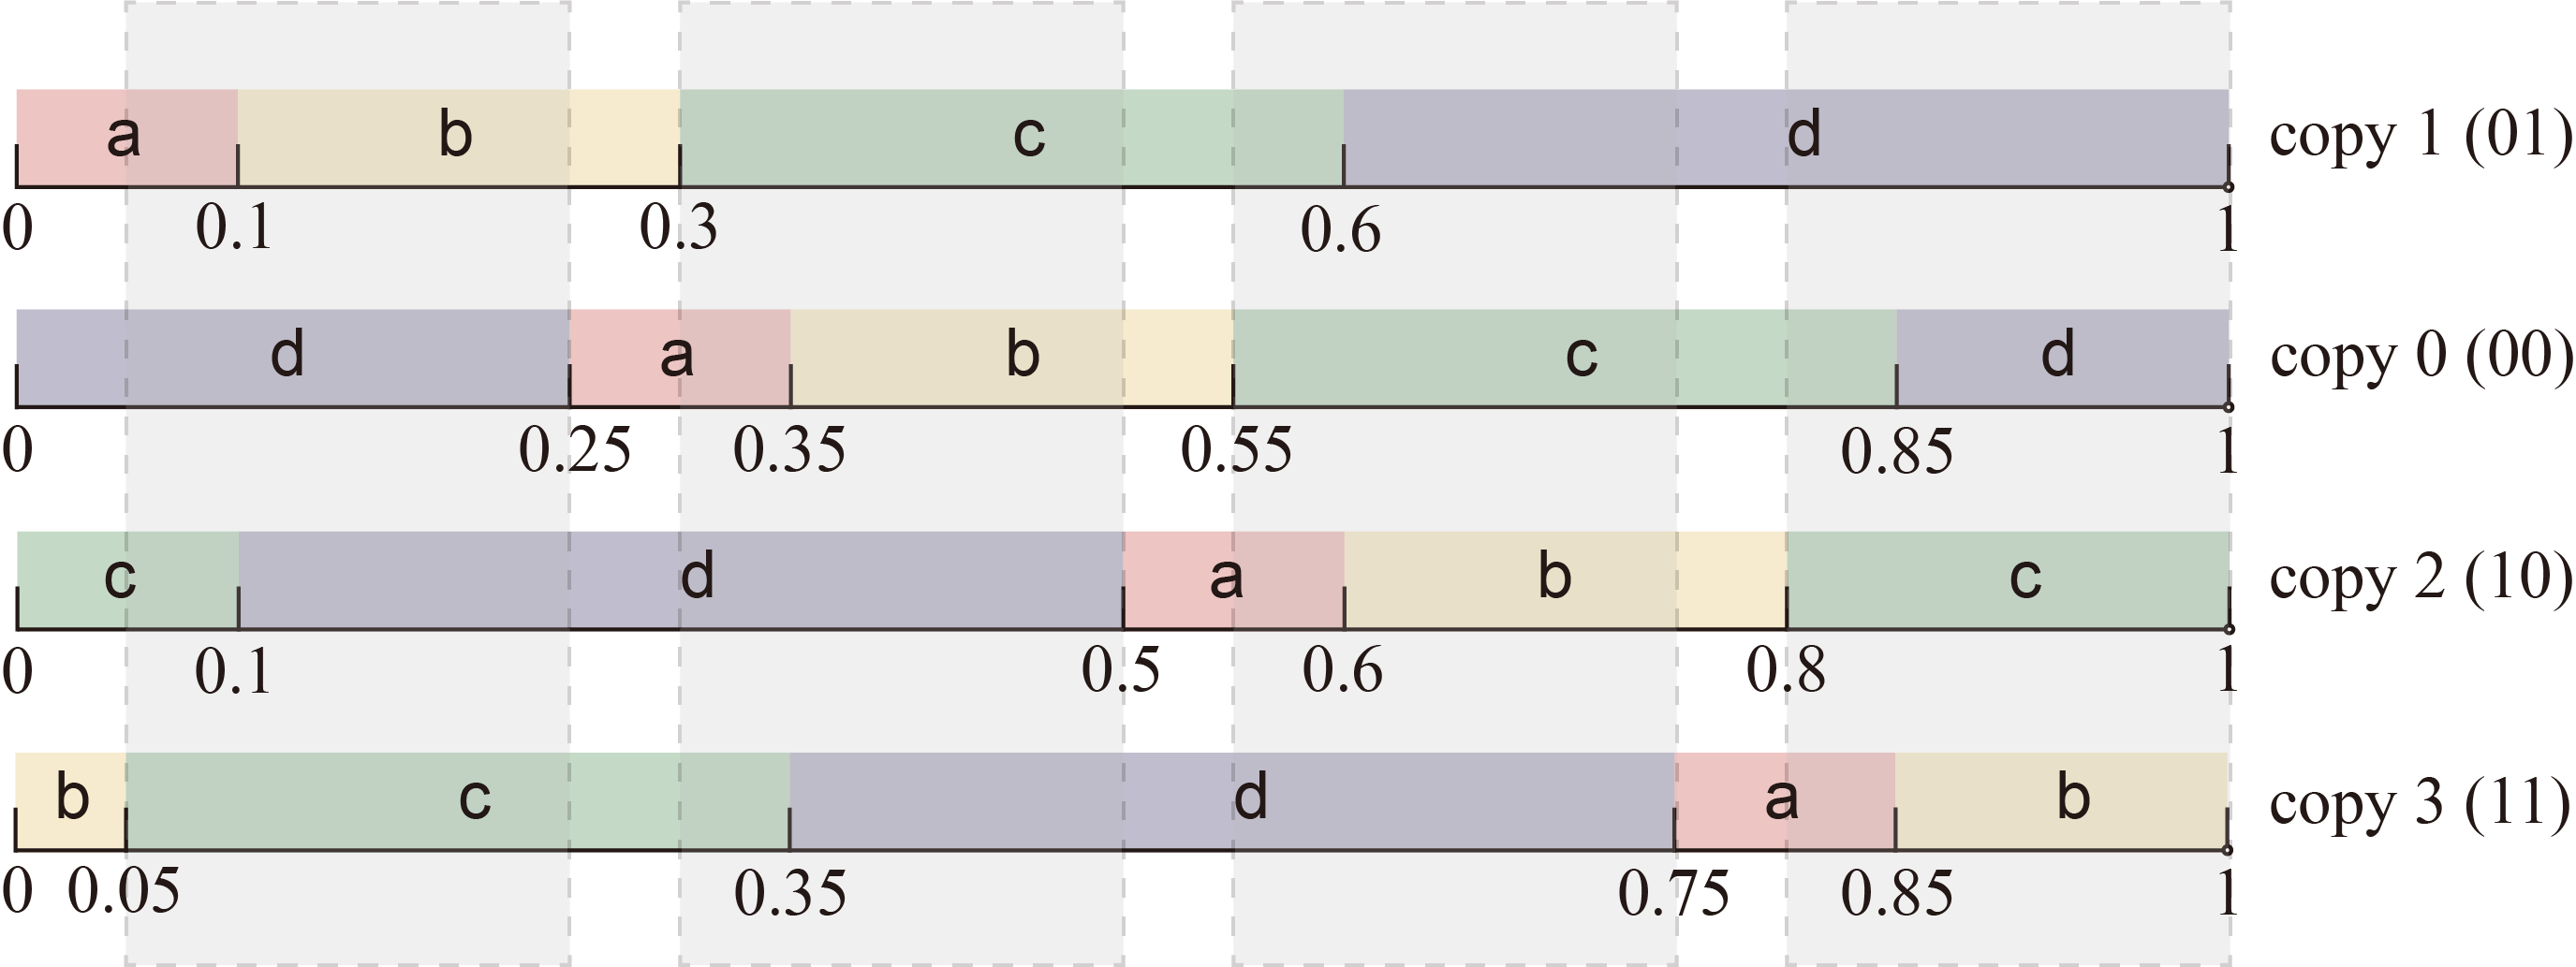 Disputed ranges